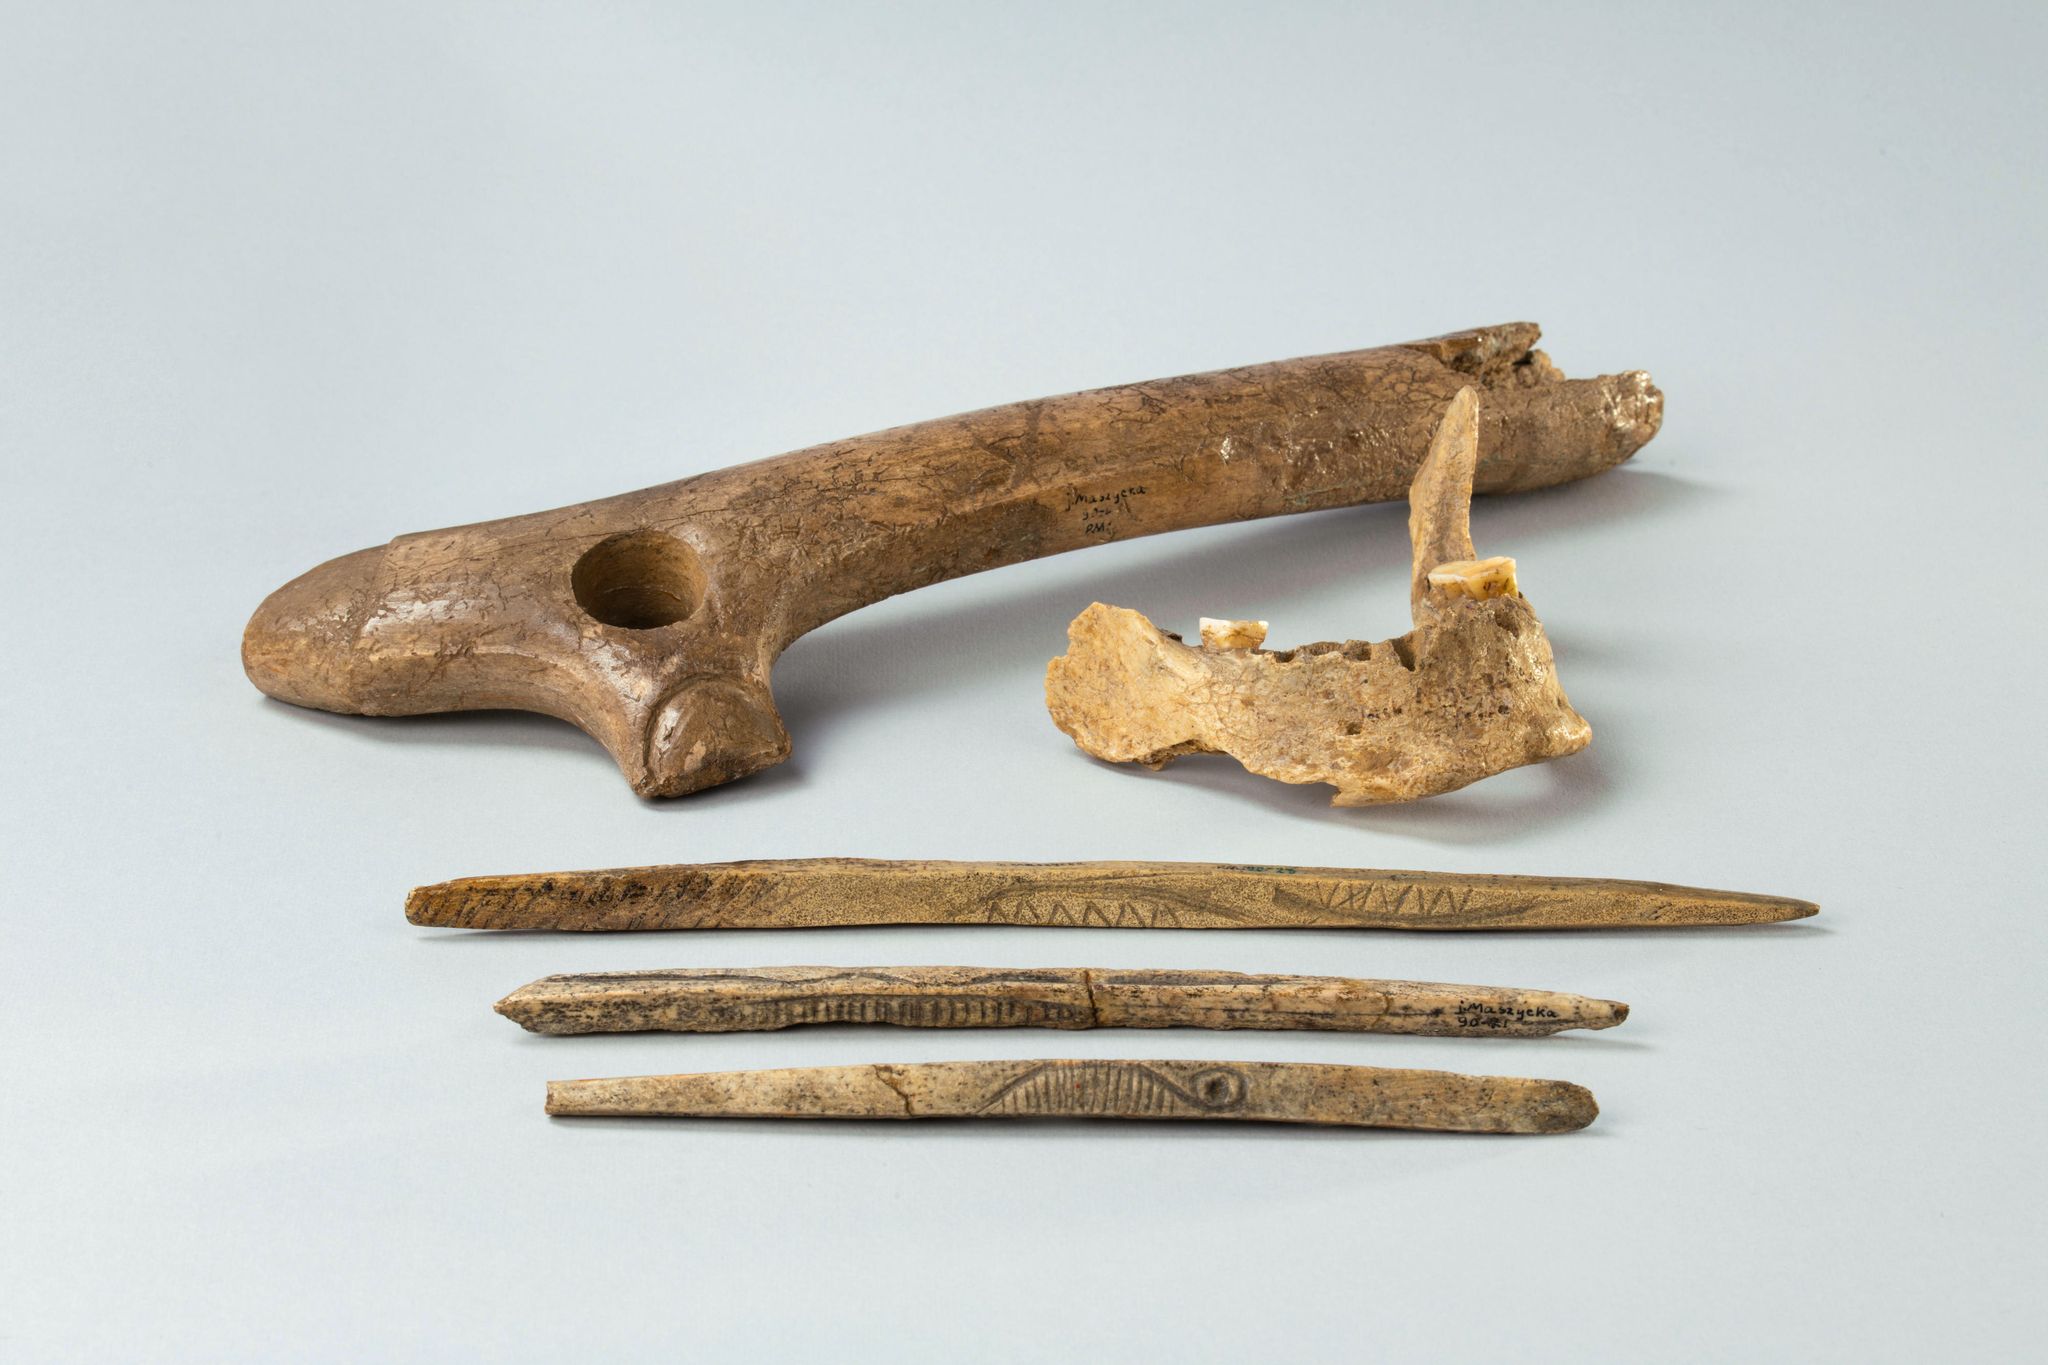 Aus der Maszycka-Höhle in Südpolen: Ein Stück eines menschlichen Kiefers sowie Knochen
und Geweihartefakte aus der Magdalenien-Kultur, die vor 19.000 bis 14.000 Jahren in großen Teilen Europas verbreitet war.